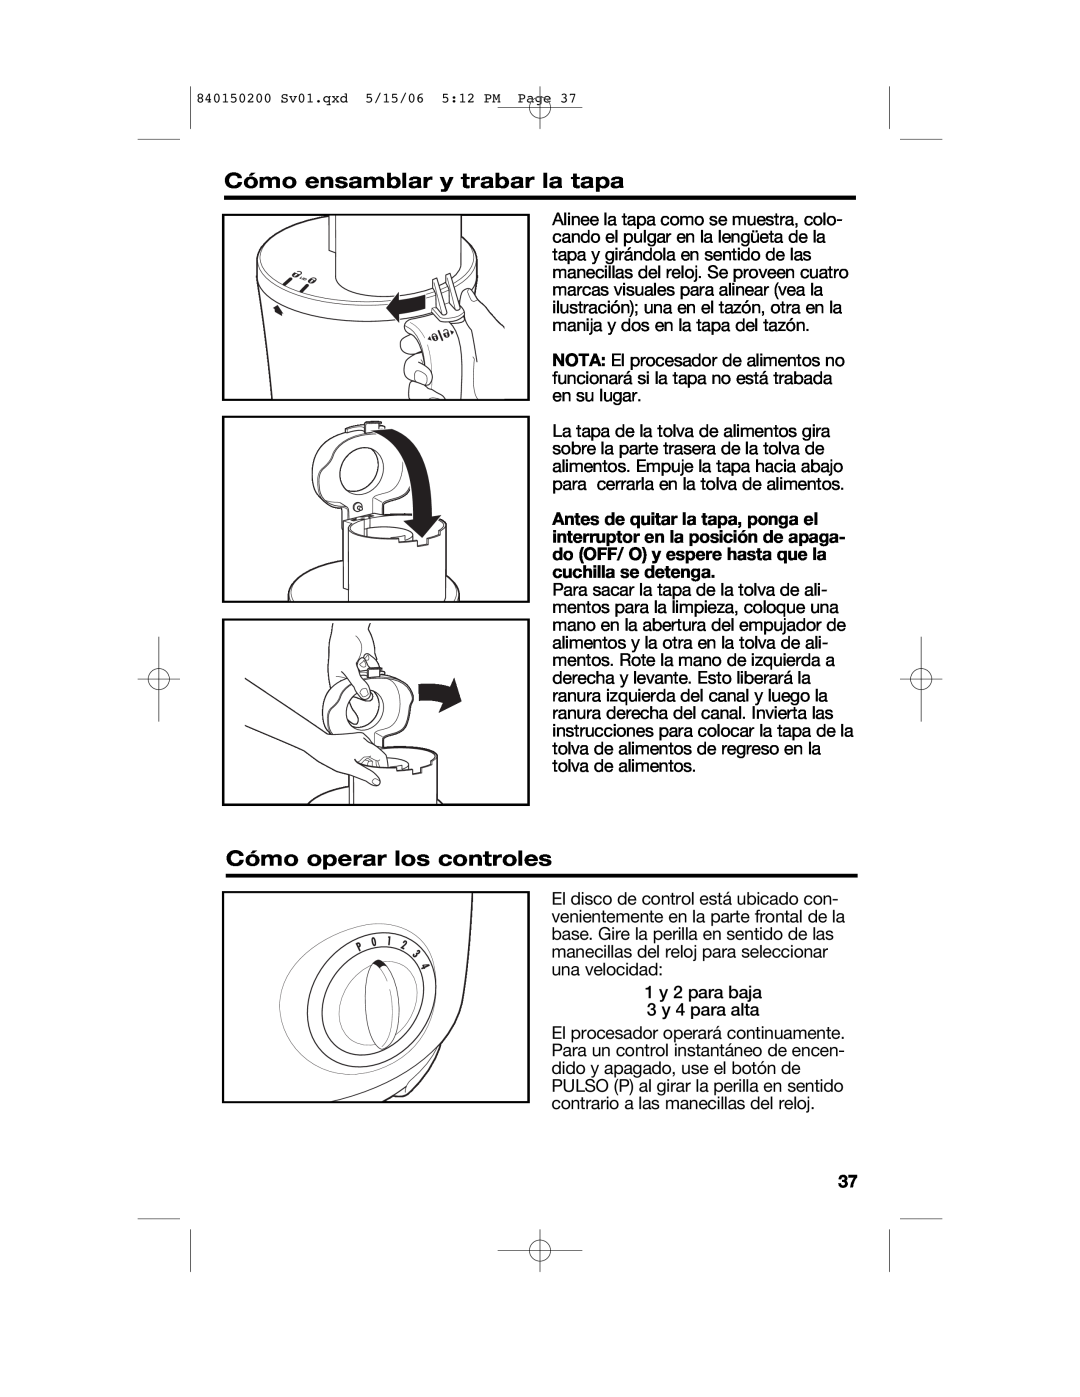 Proctor-Silex 840150200 manual Cómo ensamblar y trabar la tapa, Cómo operar los controles 